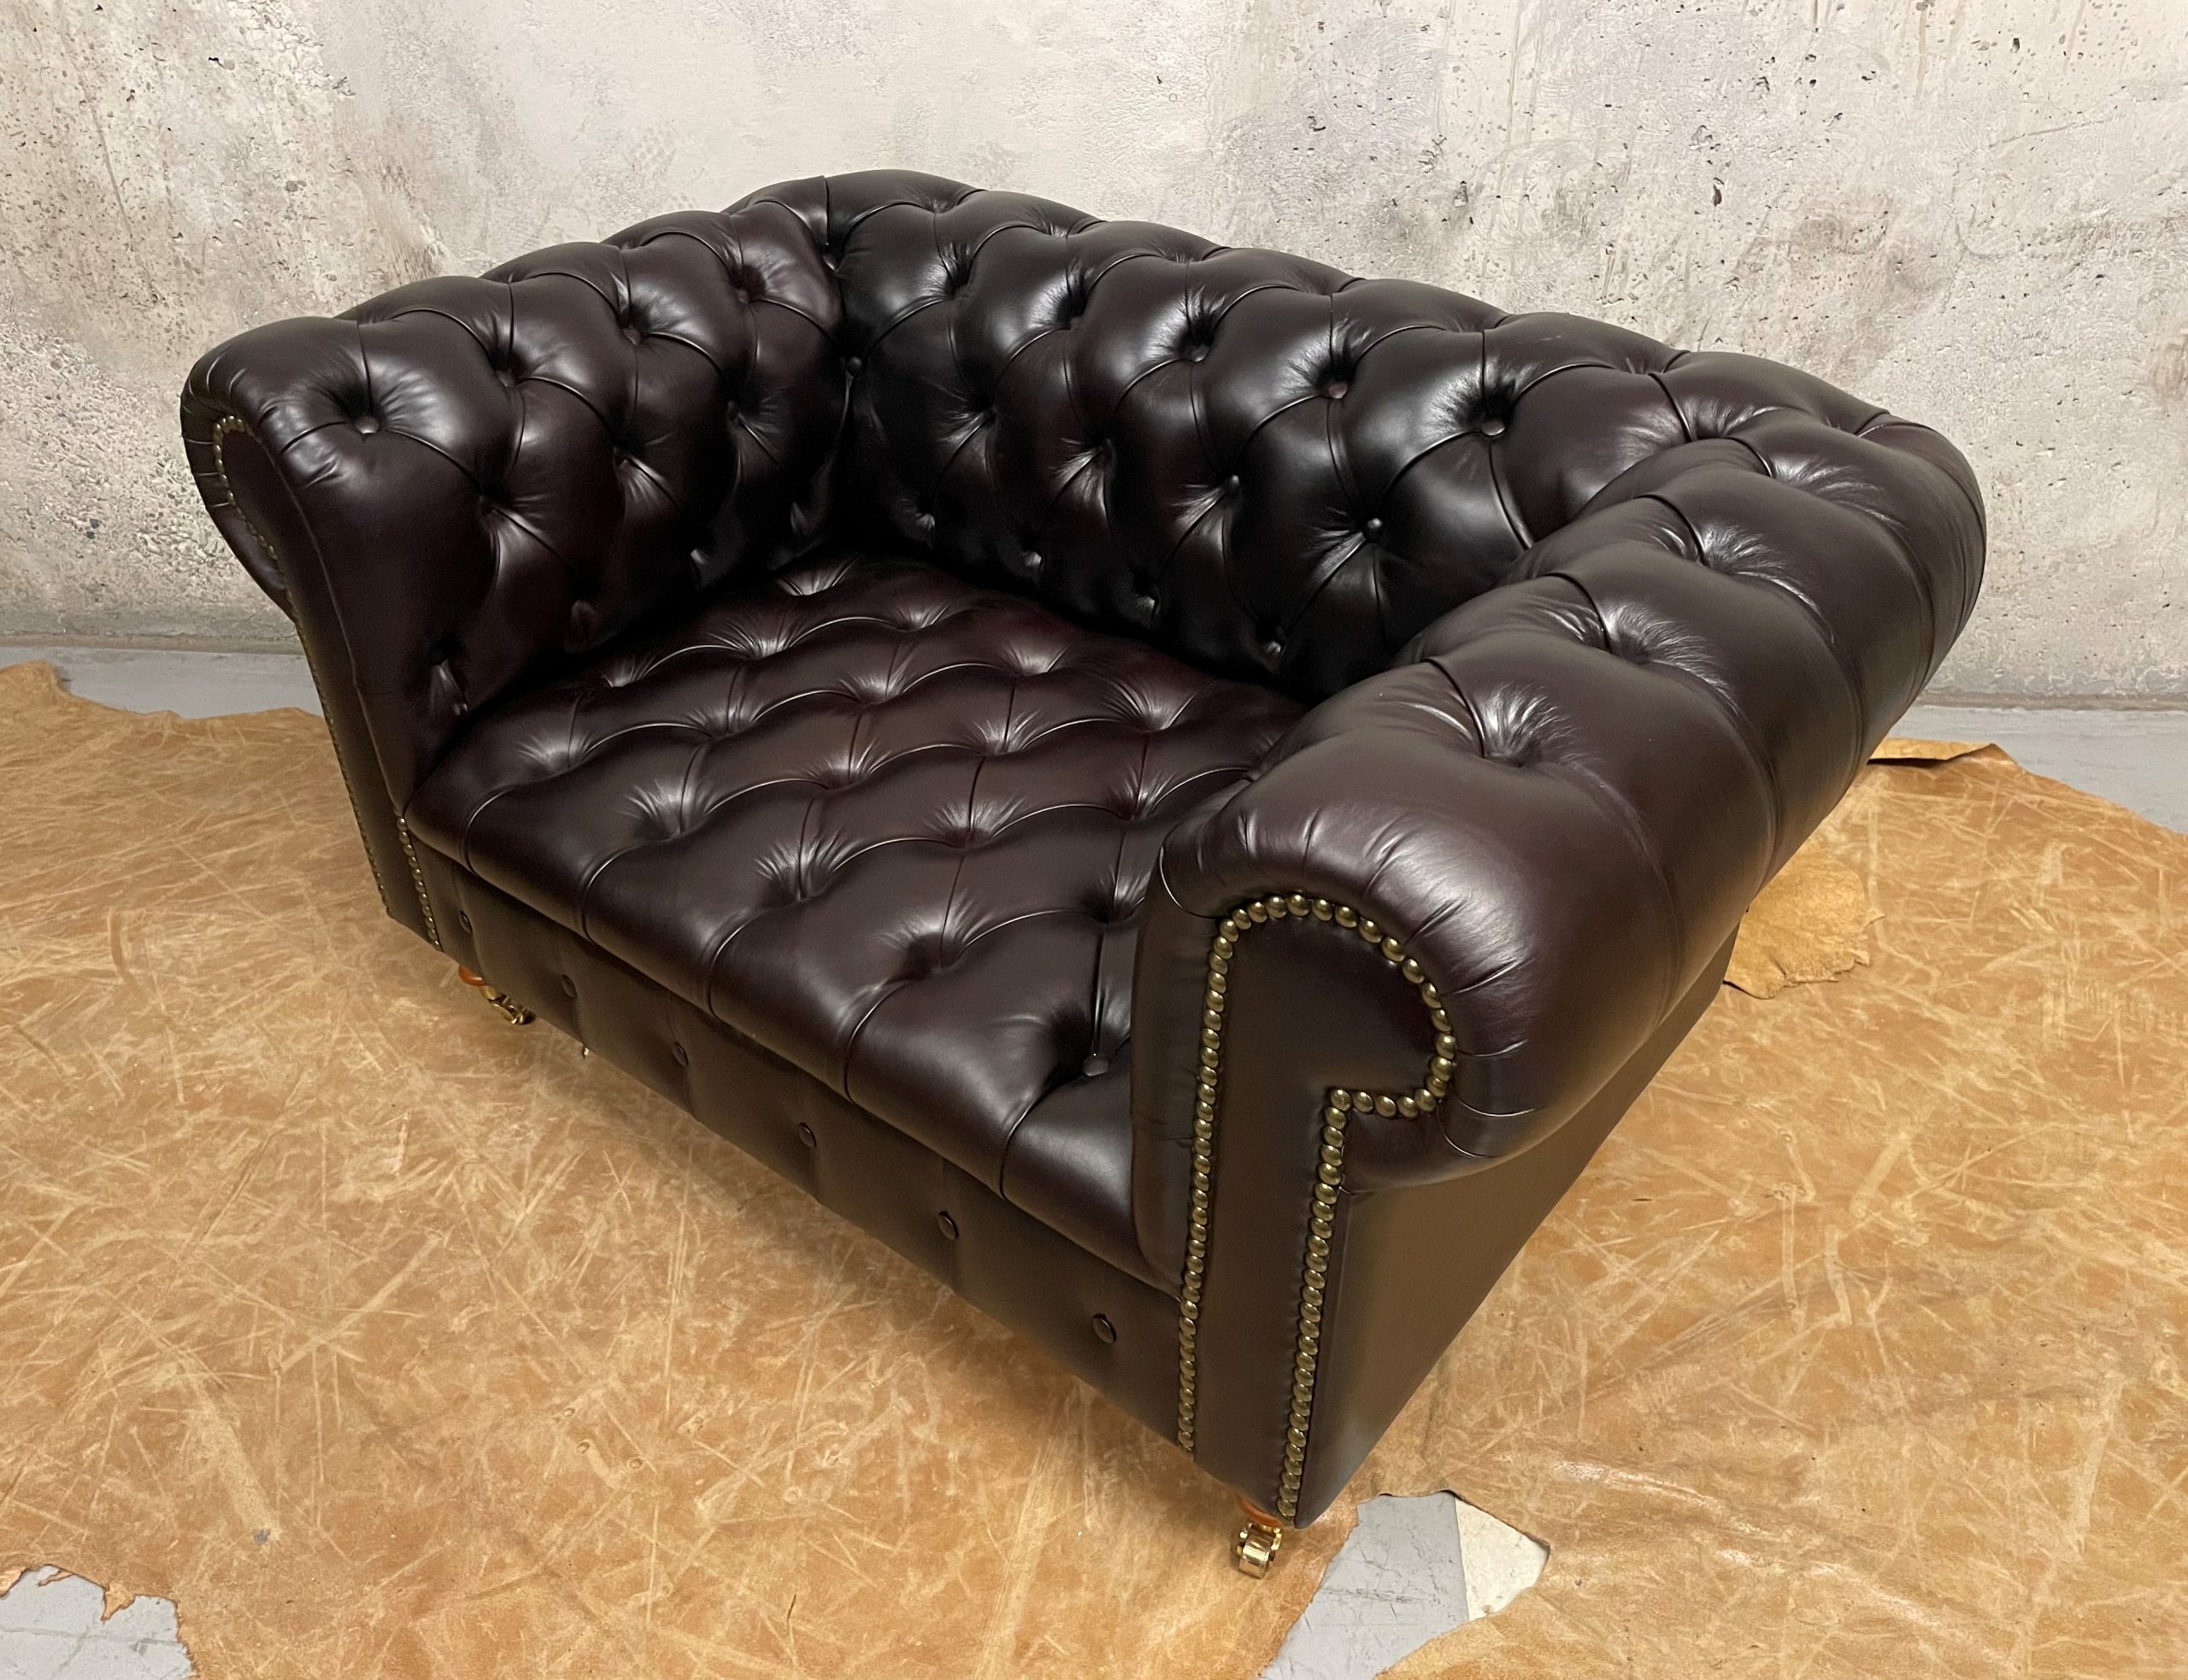 Sofa de Cuero – Chesterfield Color Hunter Chocolate, capitoné Ingles, respaldo recto clásico, Cuero 100% Natural Uruguayo – 140 cm de ancho